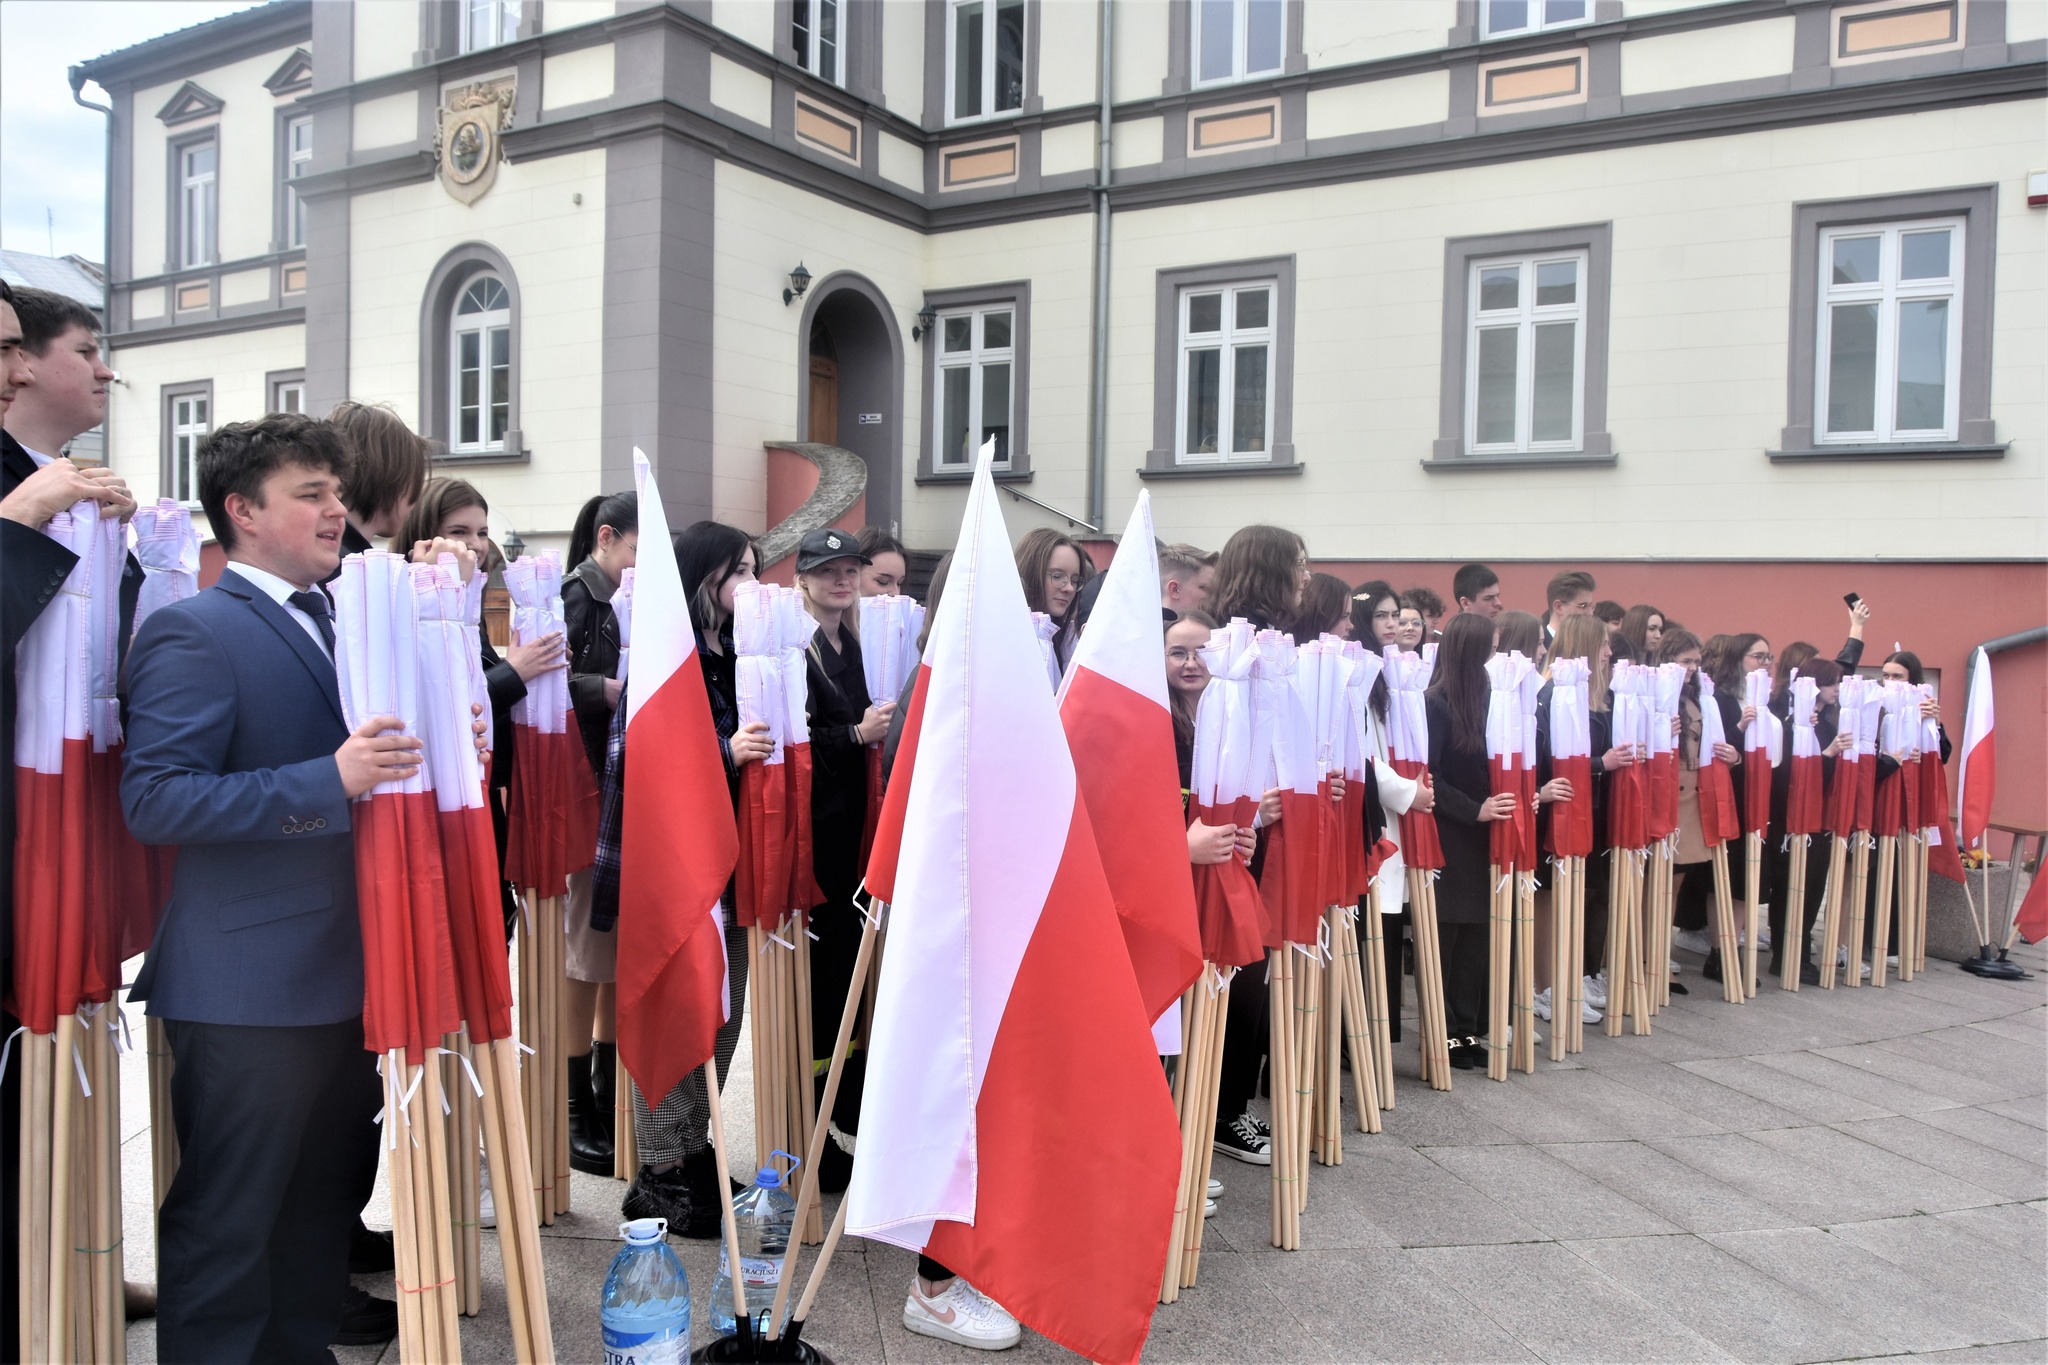 Duża grupa młodzieży z polskimi flagami stojąca na rynku.